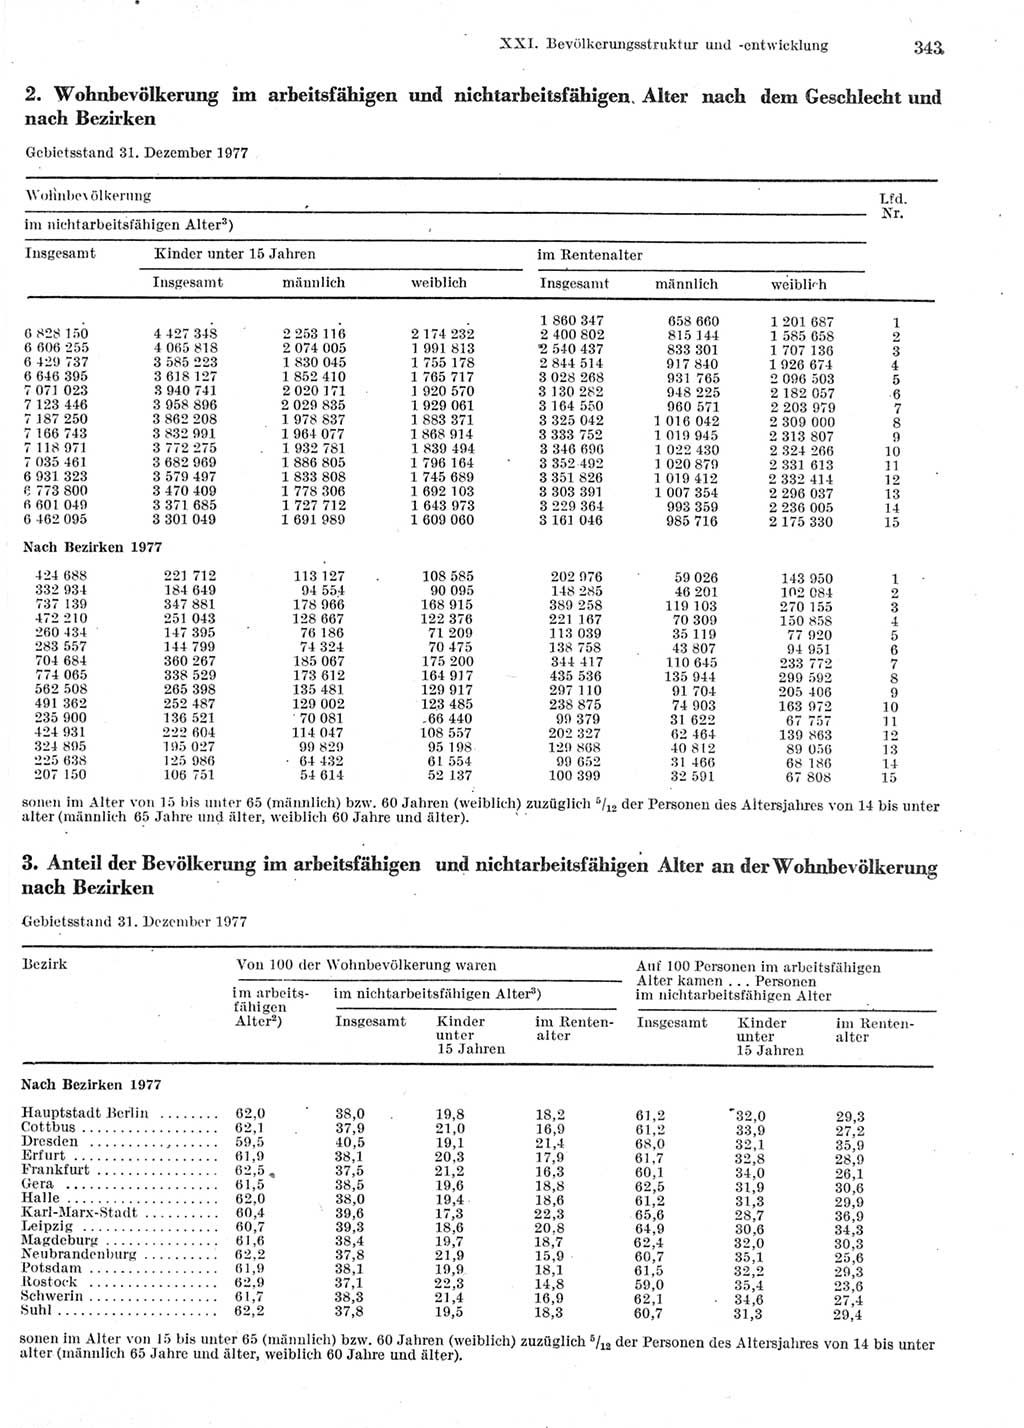 Statistisches Jahrbuch der Deutschen Demokratischen Republik (DDR) 1978, Seite 343 (Stat. Jb. DDR 1978, S. 343)